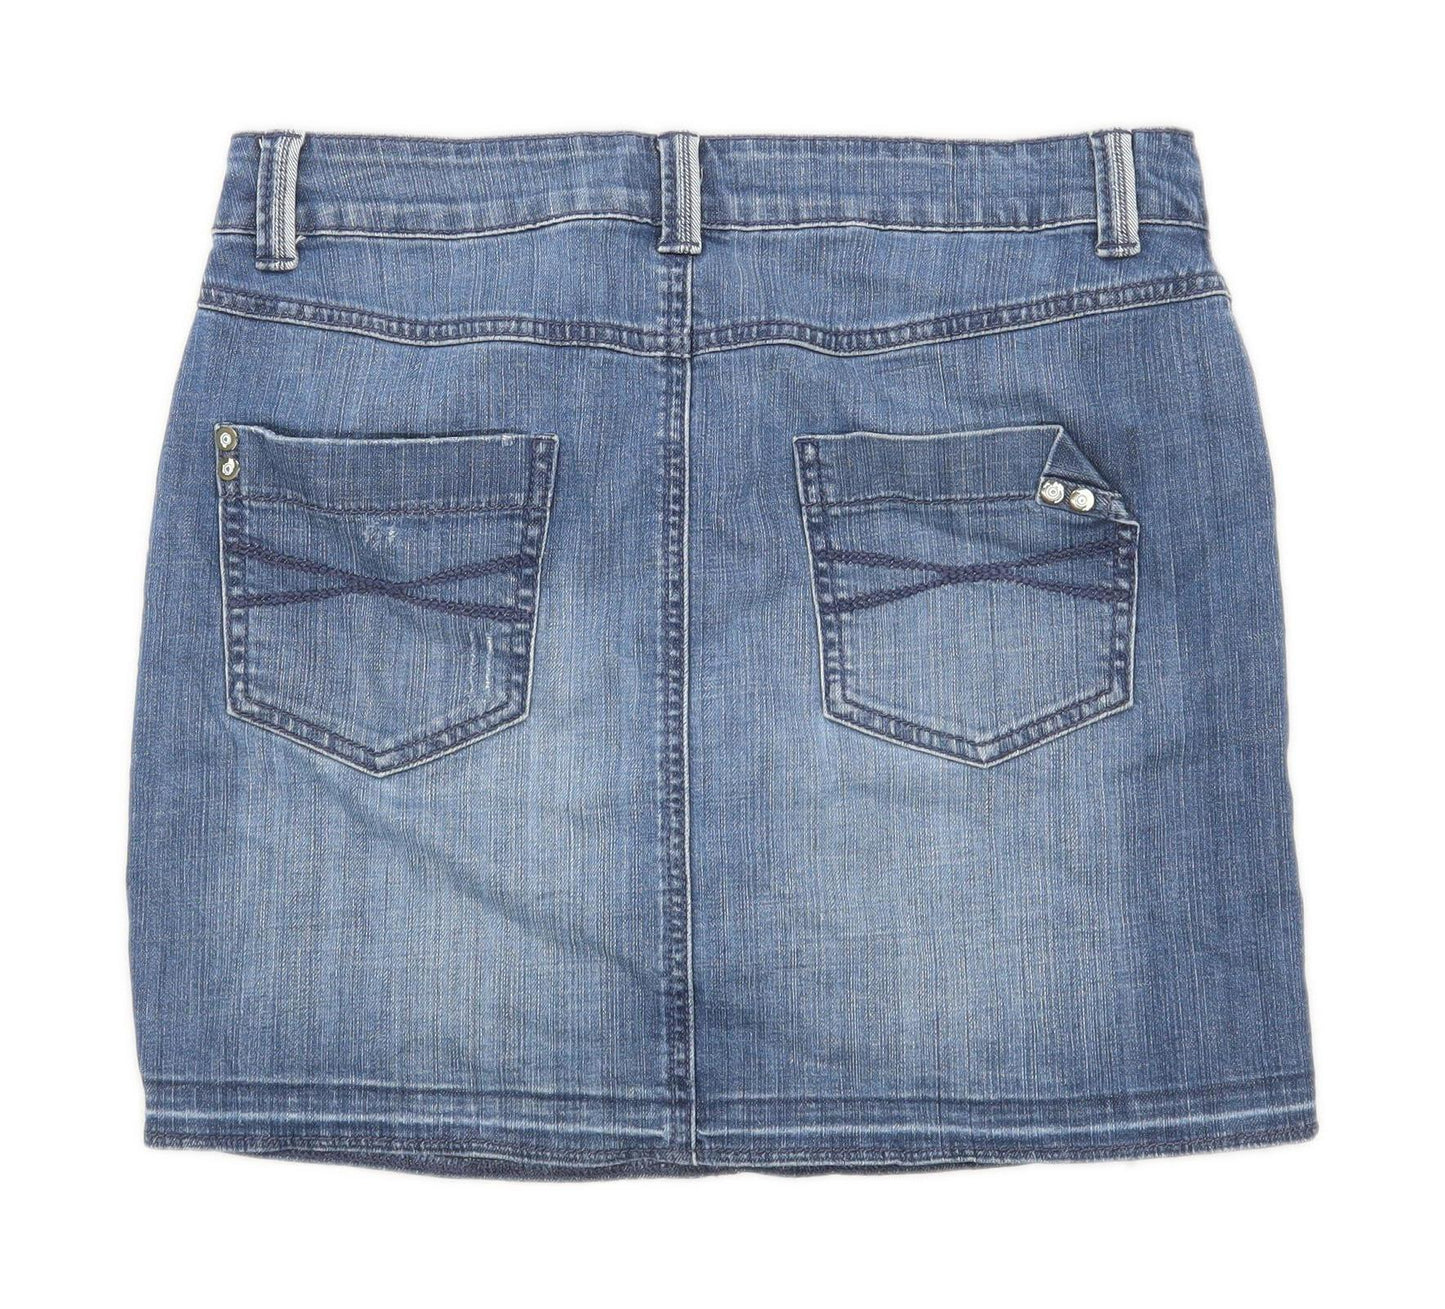 Marks & Spencer Womens Size 10 Denim Blue Skirt (Regular)